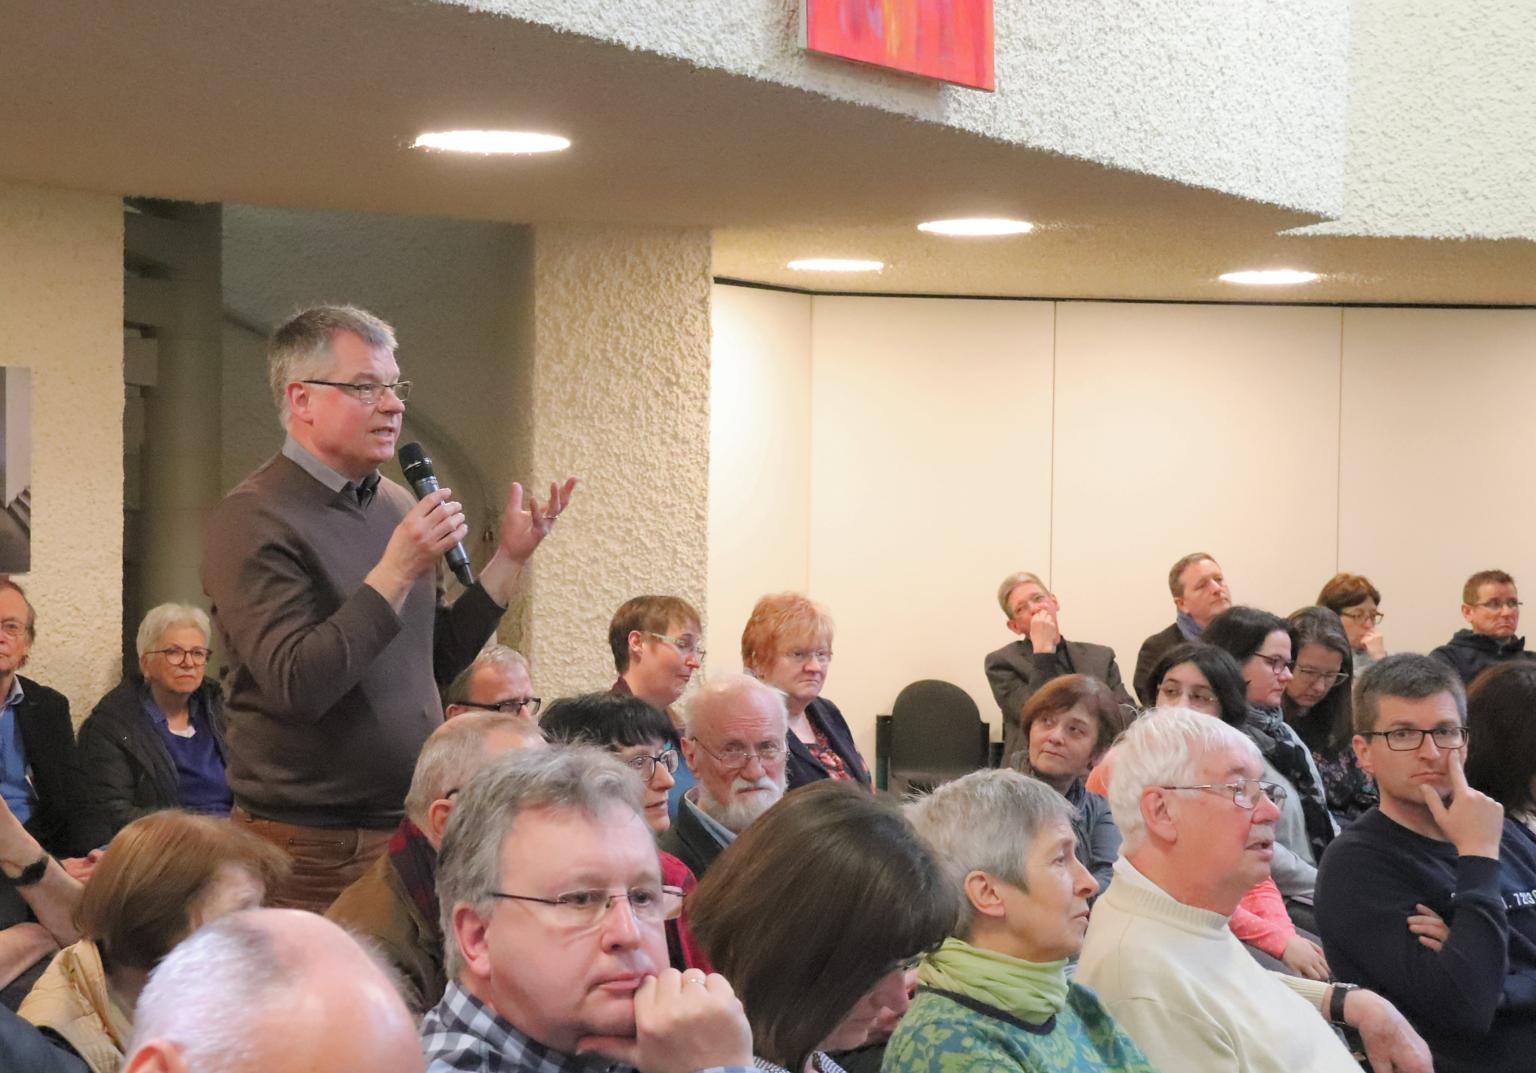 Darmstadt, 9.3.2019: Zahlreiche Fragen und Statements gab es von Seiten der Teilnehmerinnen und Teilnehmer im letzten Teil des Gesprächstages. (c) Bistum Mainz / Matschak